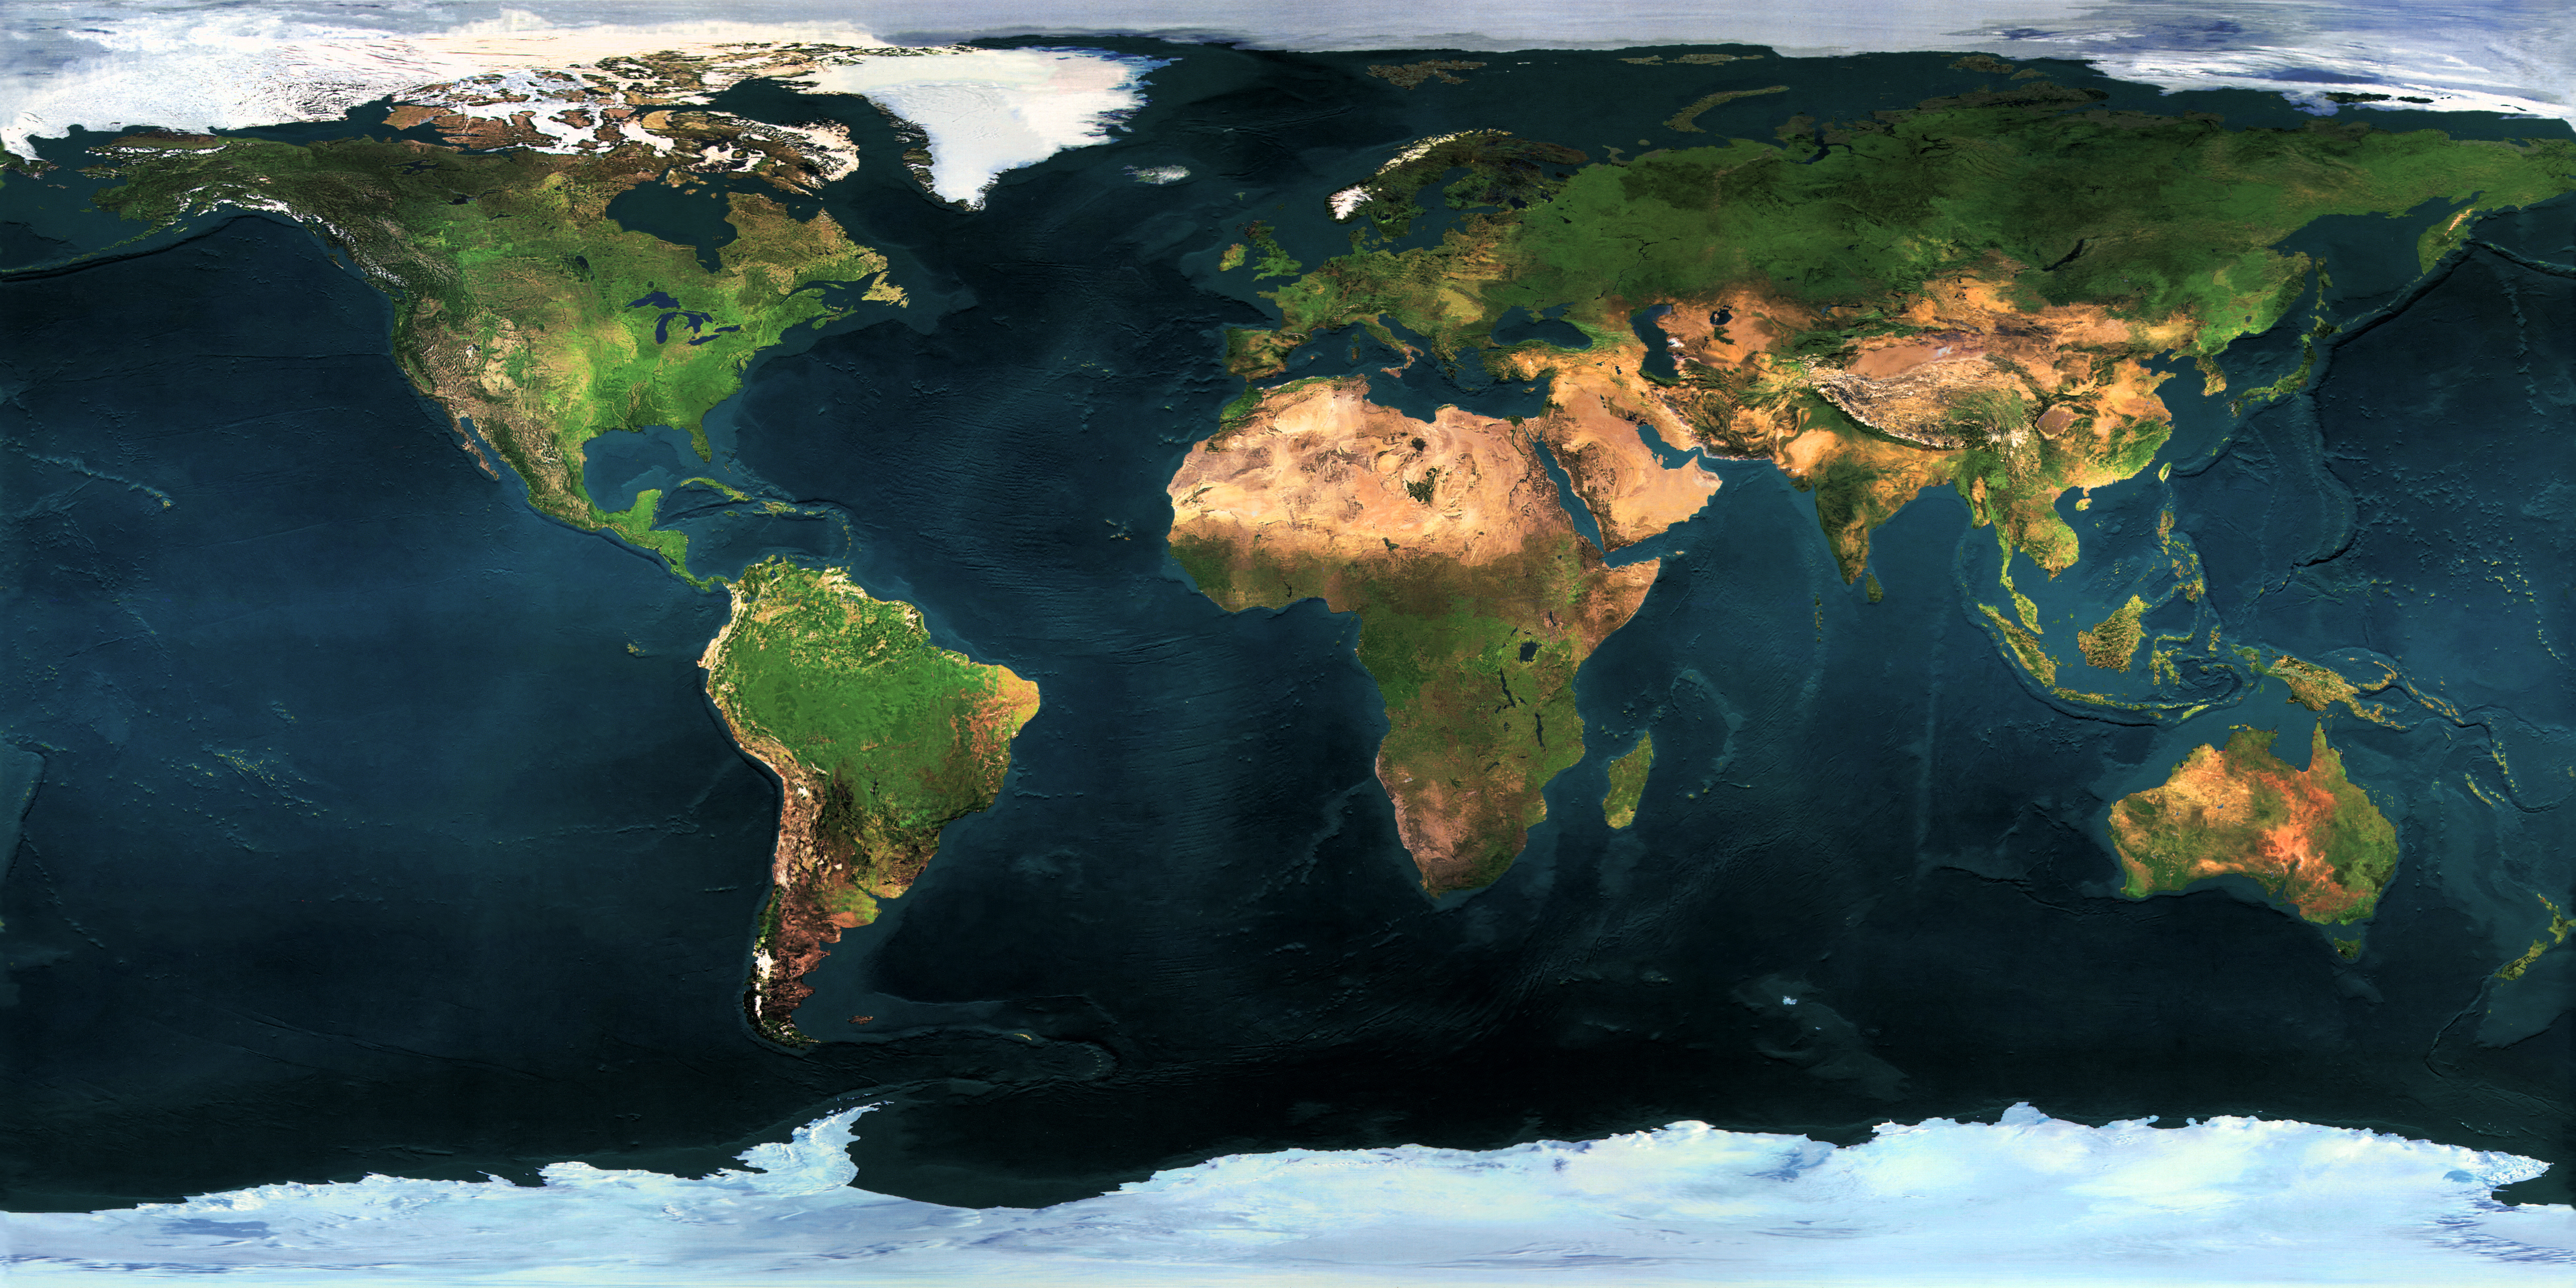 Земля, карты, континенты - обои на рабочий стол